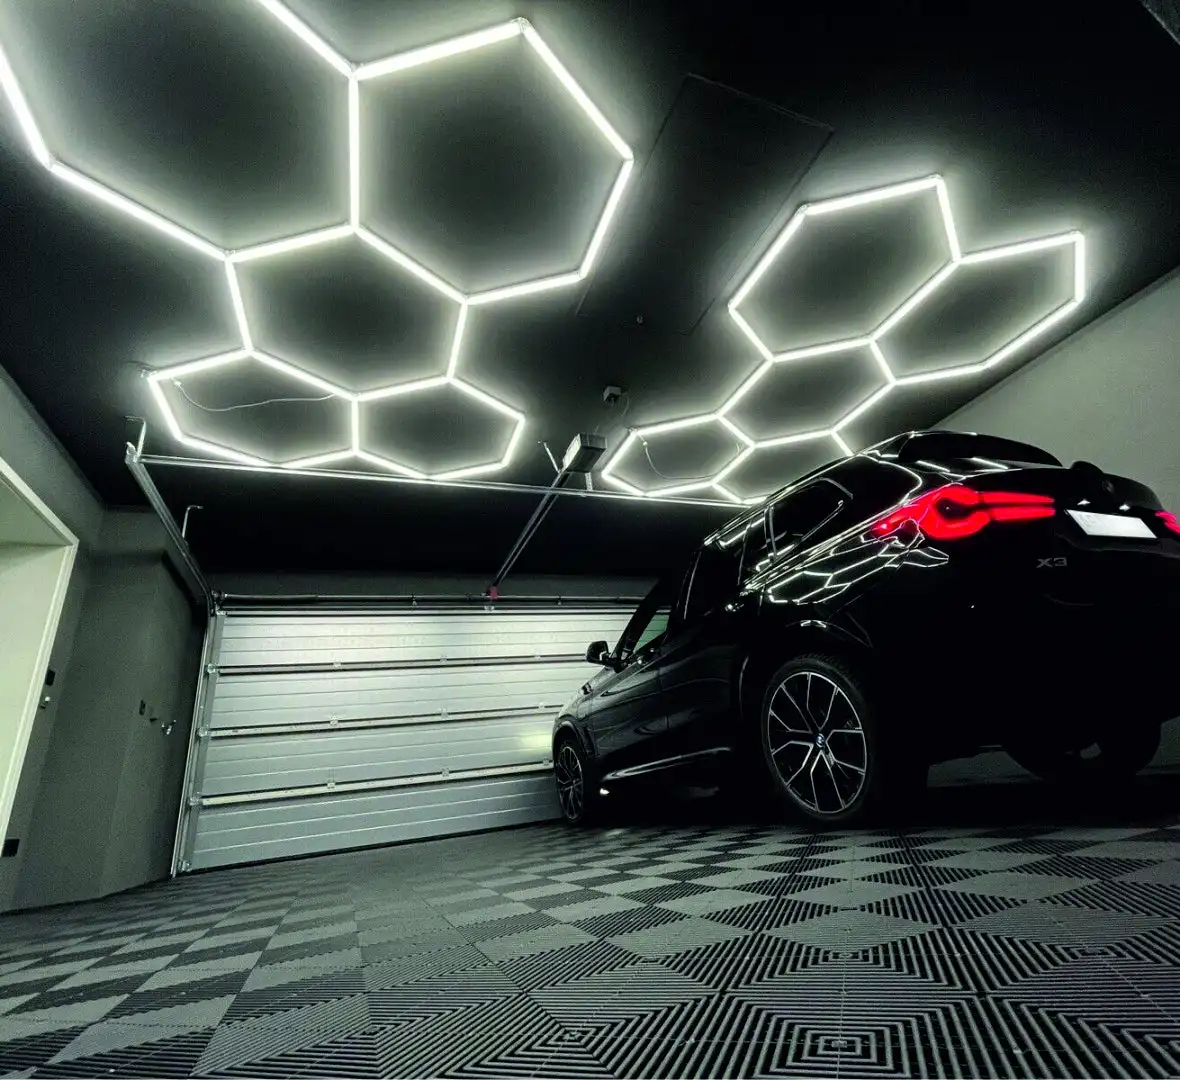 14X Hexagon LED Lighting For Car Wash Detail Home Garage Workshop